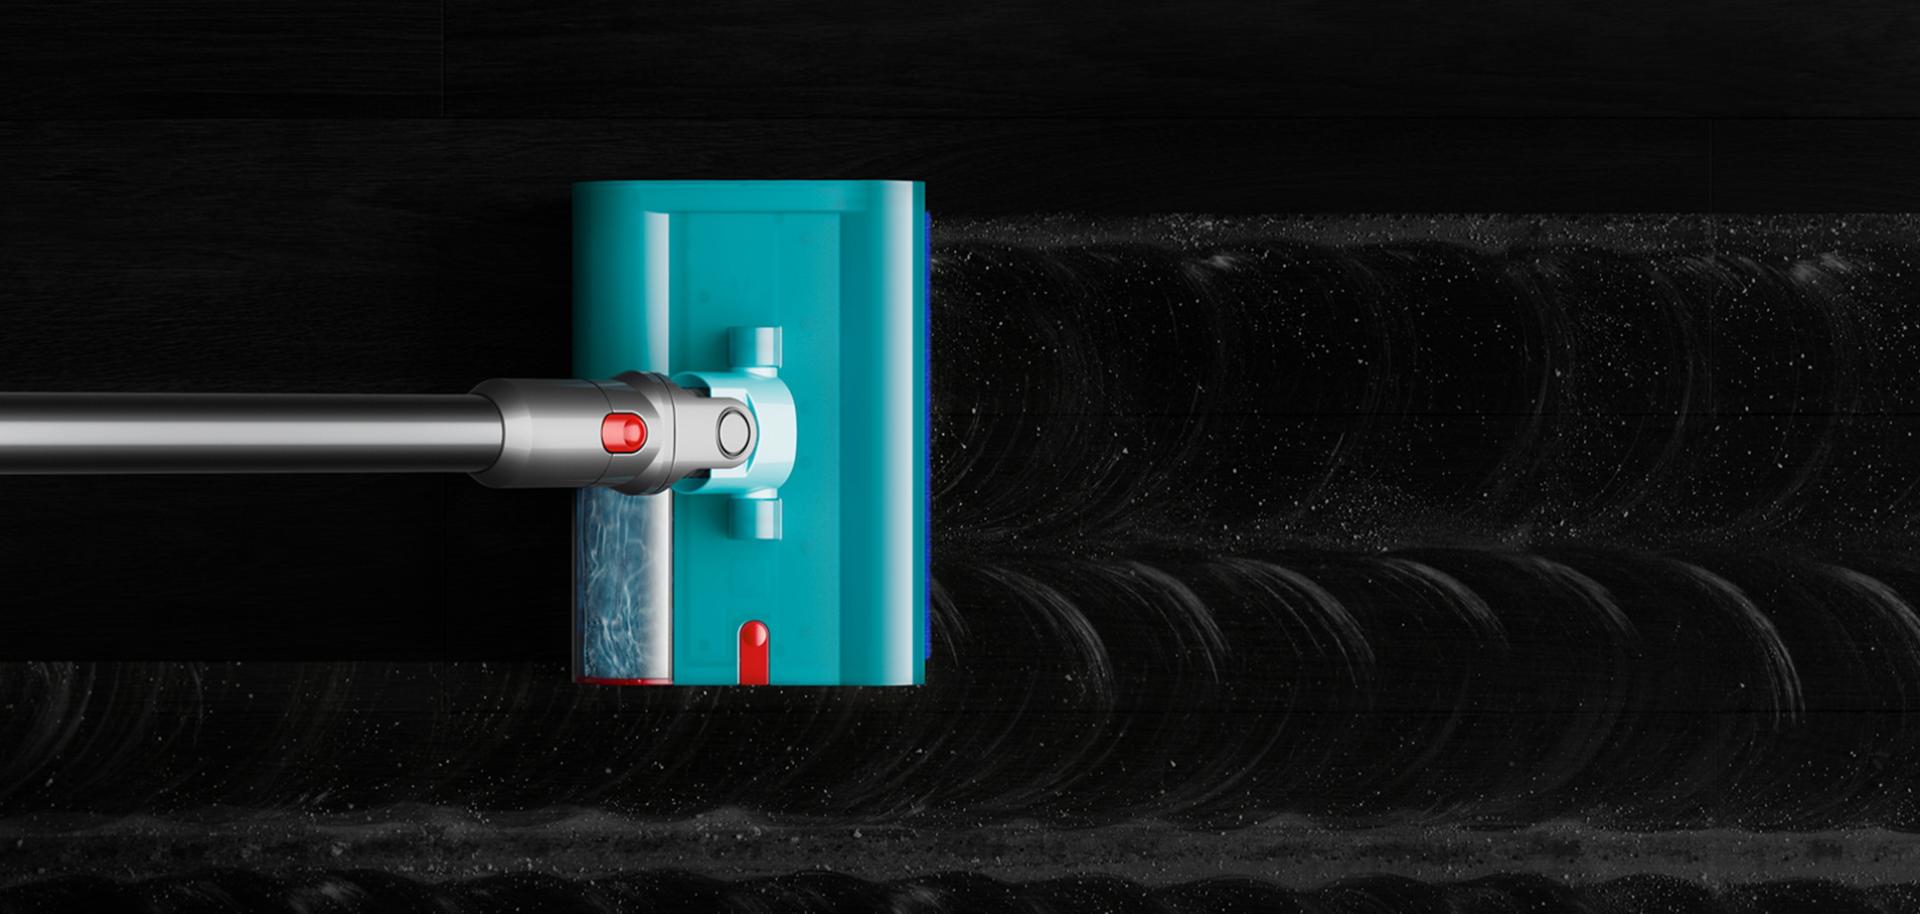 Końcówka Dyson Submarine™ do czyszczenia na mokro została zaprojektowana tak, aby usuwać brud z twardych podłóg czystą wodą przez cały czas sprzątania, pozostawiając czystą i lśniącą podłogę bez smug.